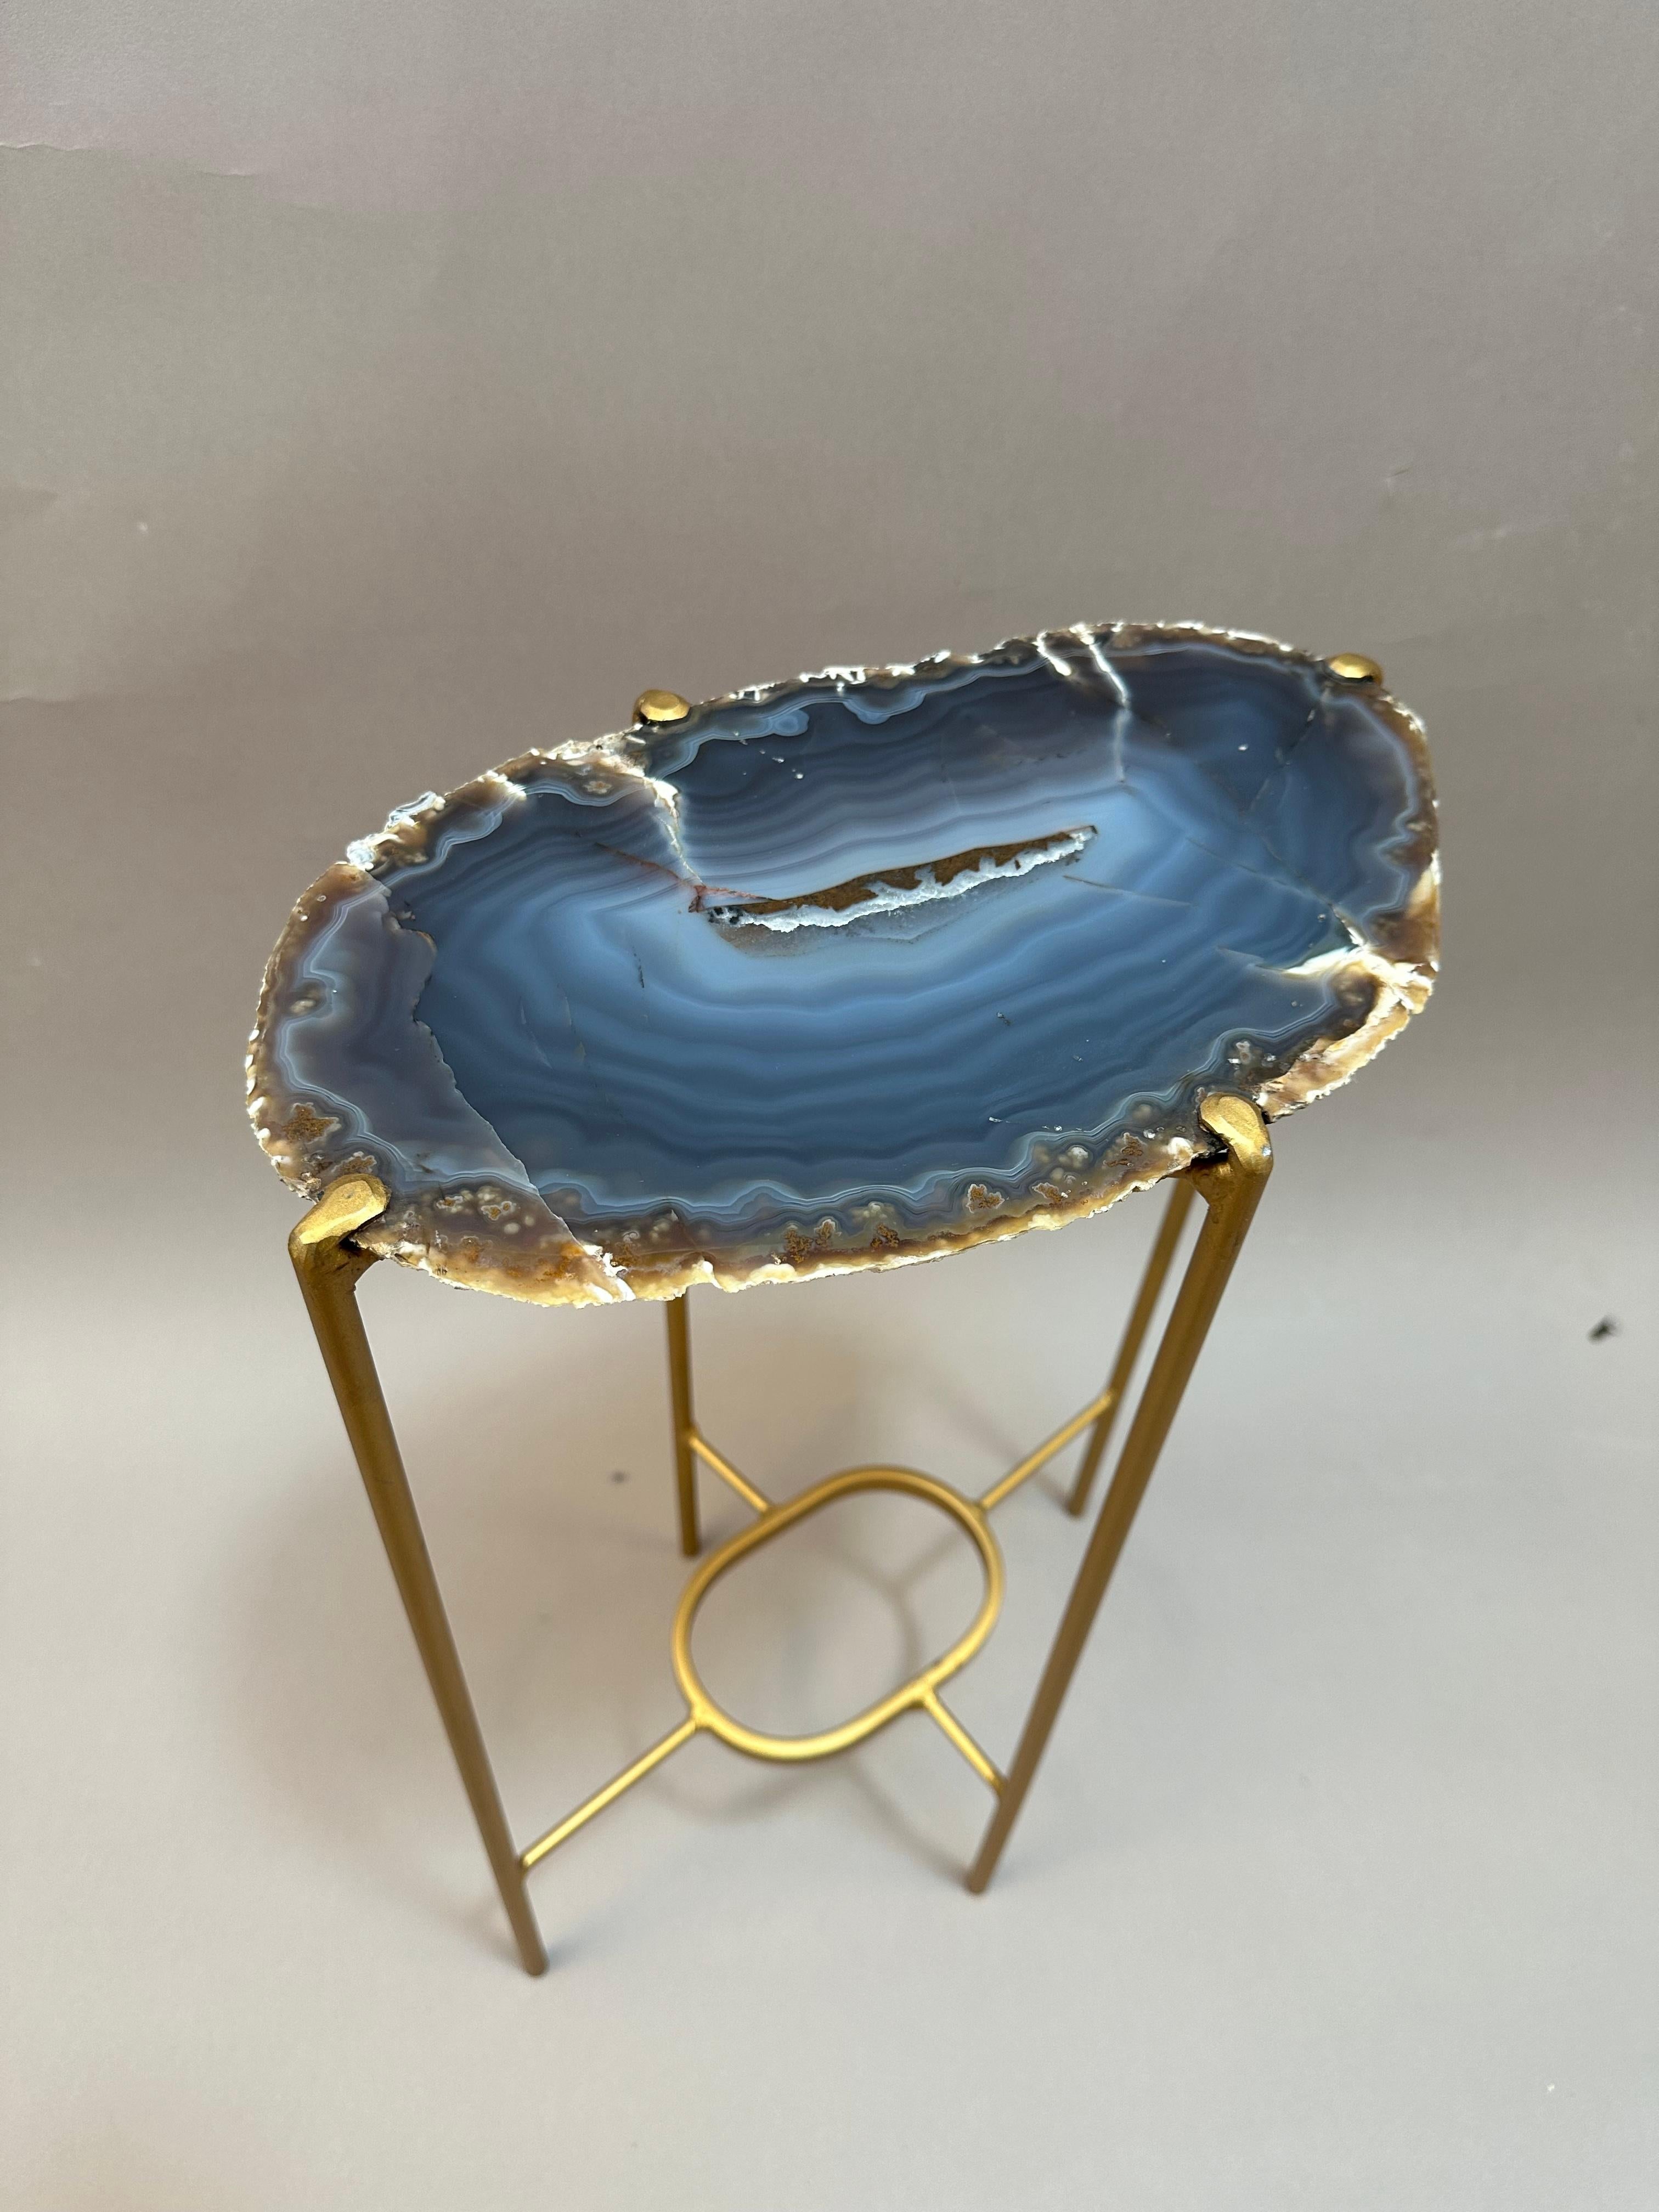 Table à boissons en géode, artisanale et moderne. Grand plateau en quartzite avec une base en acier doré. Magnifique cristal bleu foncé avec un centre multi bleu.
